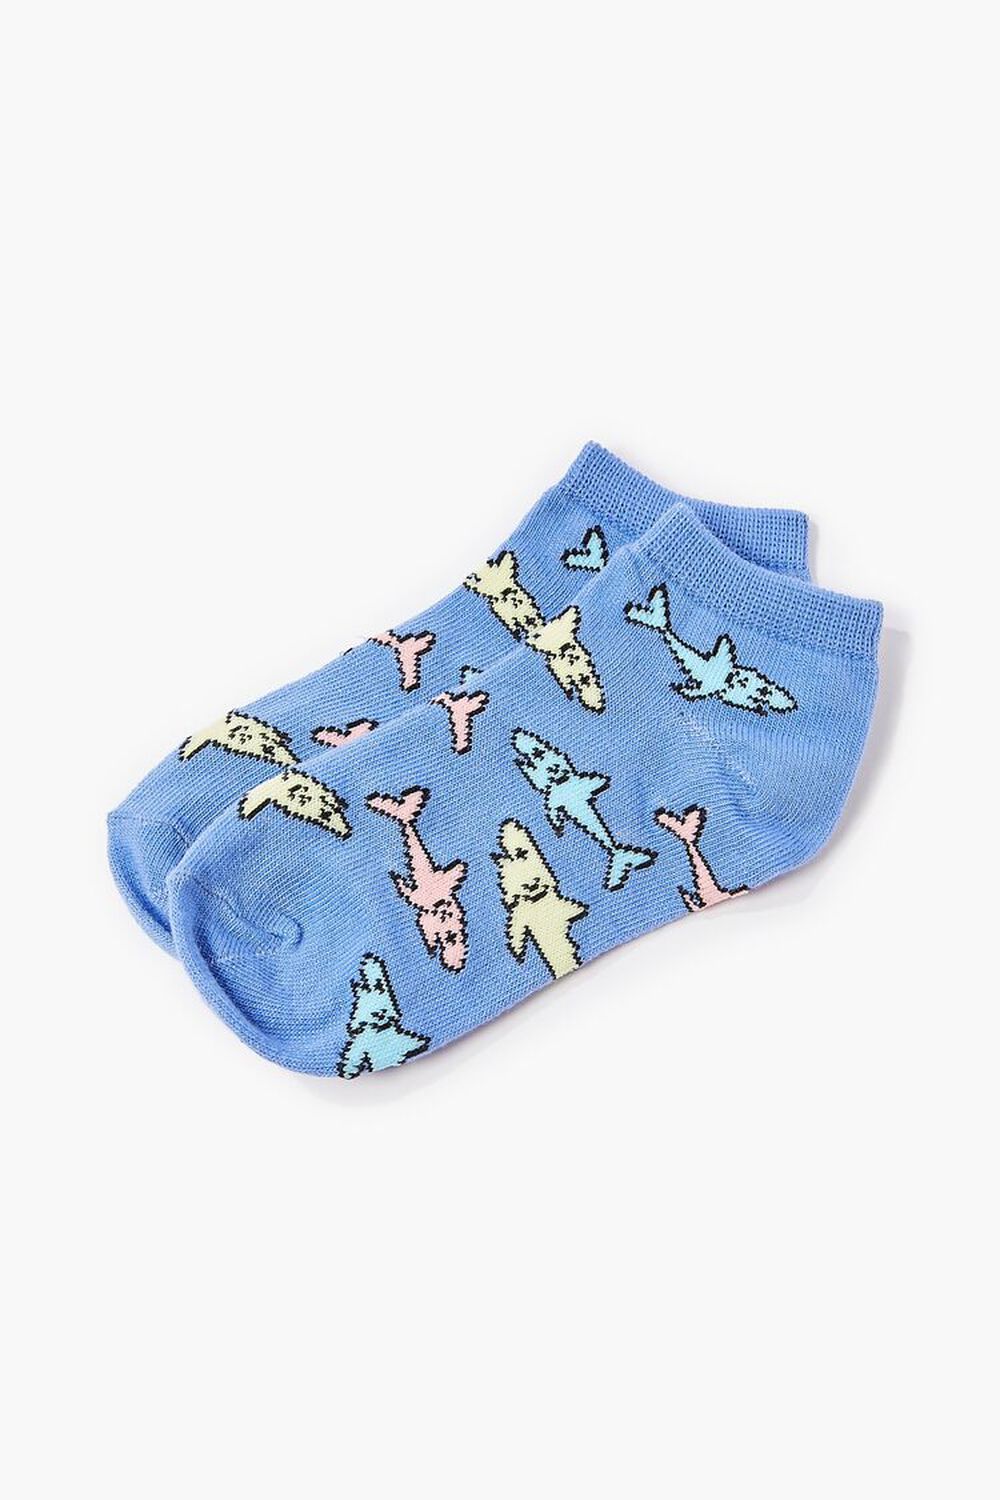 BLUE/MULTI Kids Shark Print Ankle Socks (Girls + Boys), image 1